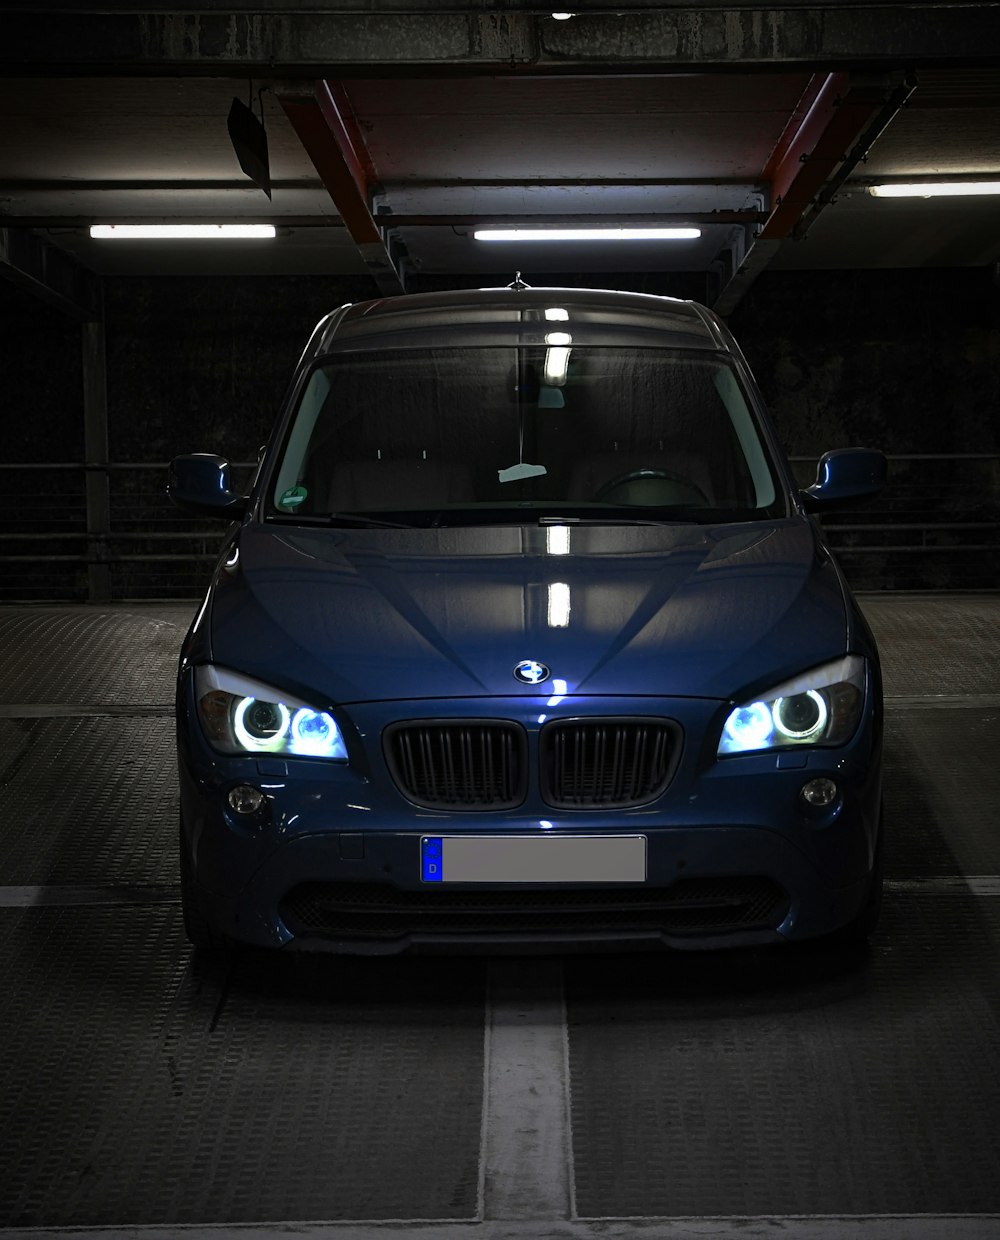 Coche BMW azul en el garaje